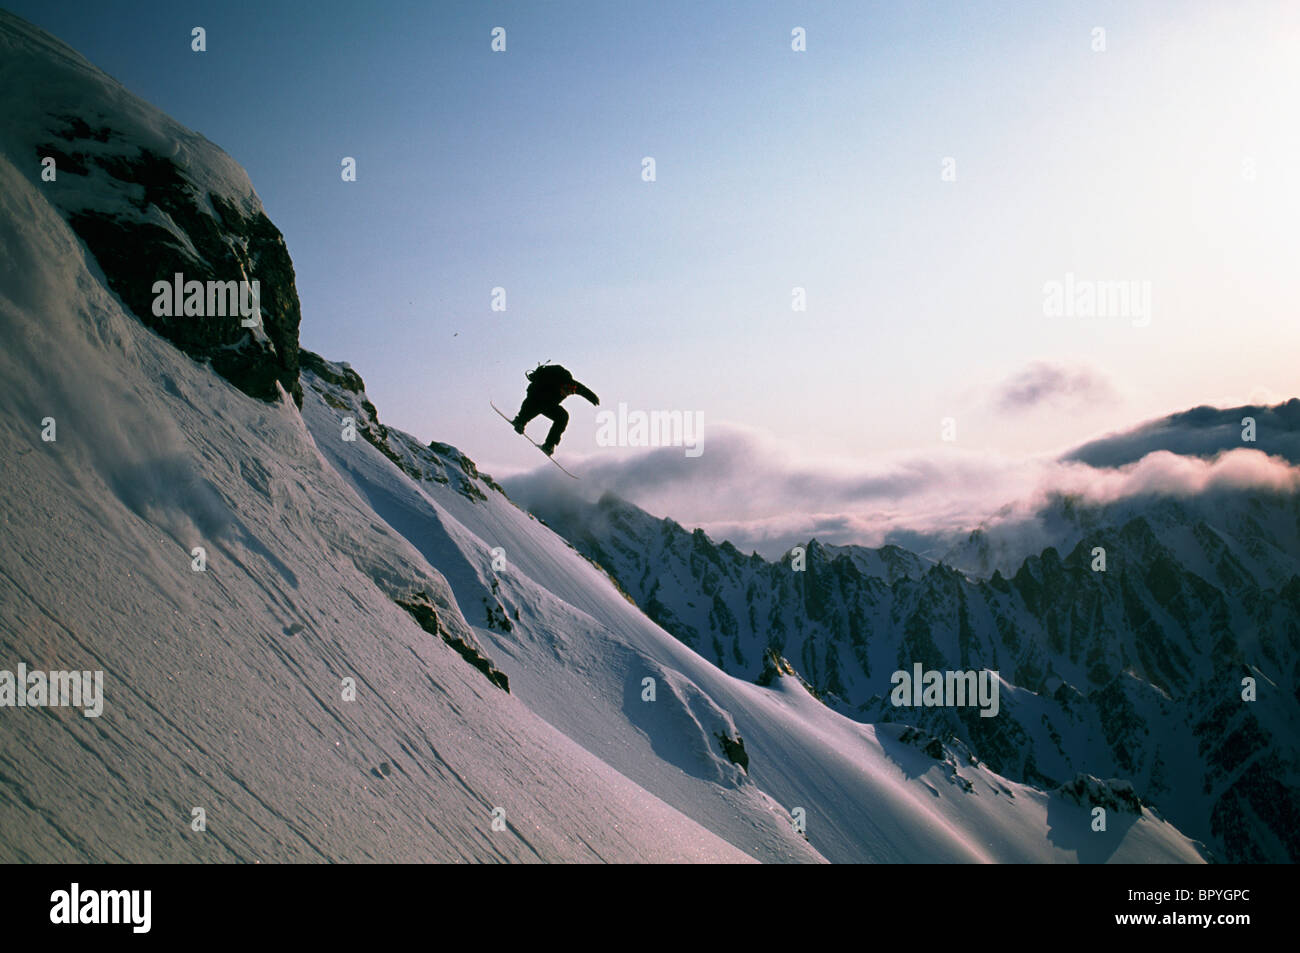 Cliff jump on snowboard Stock Photo